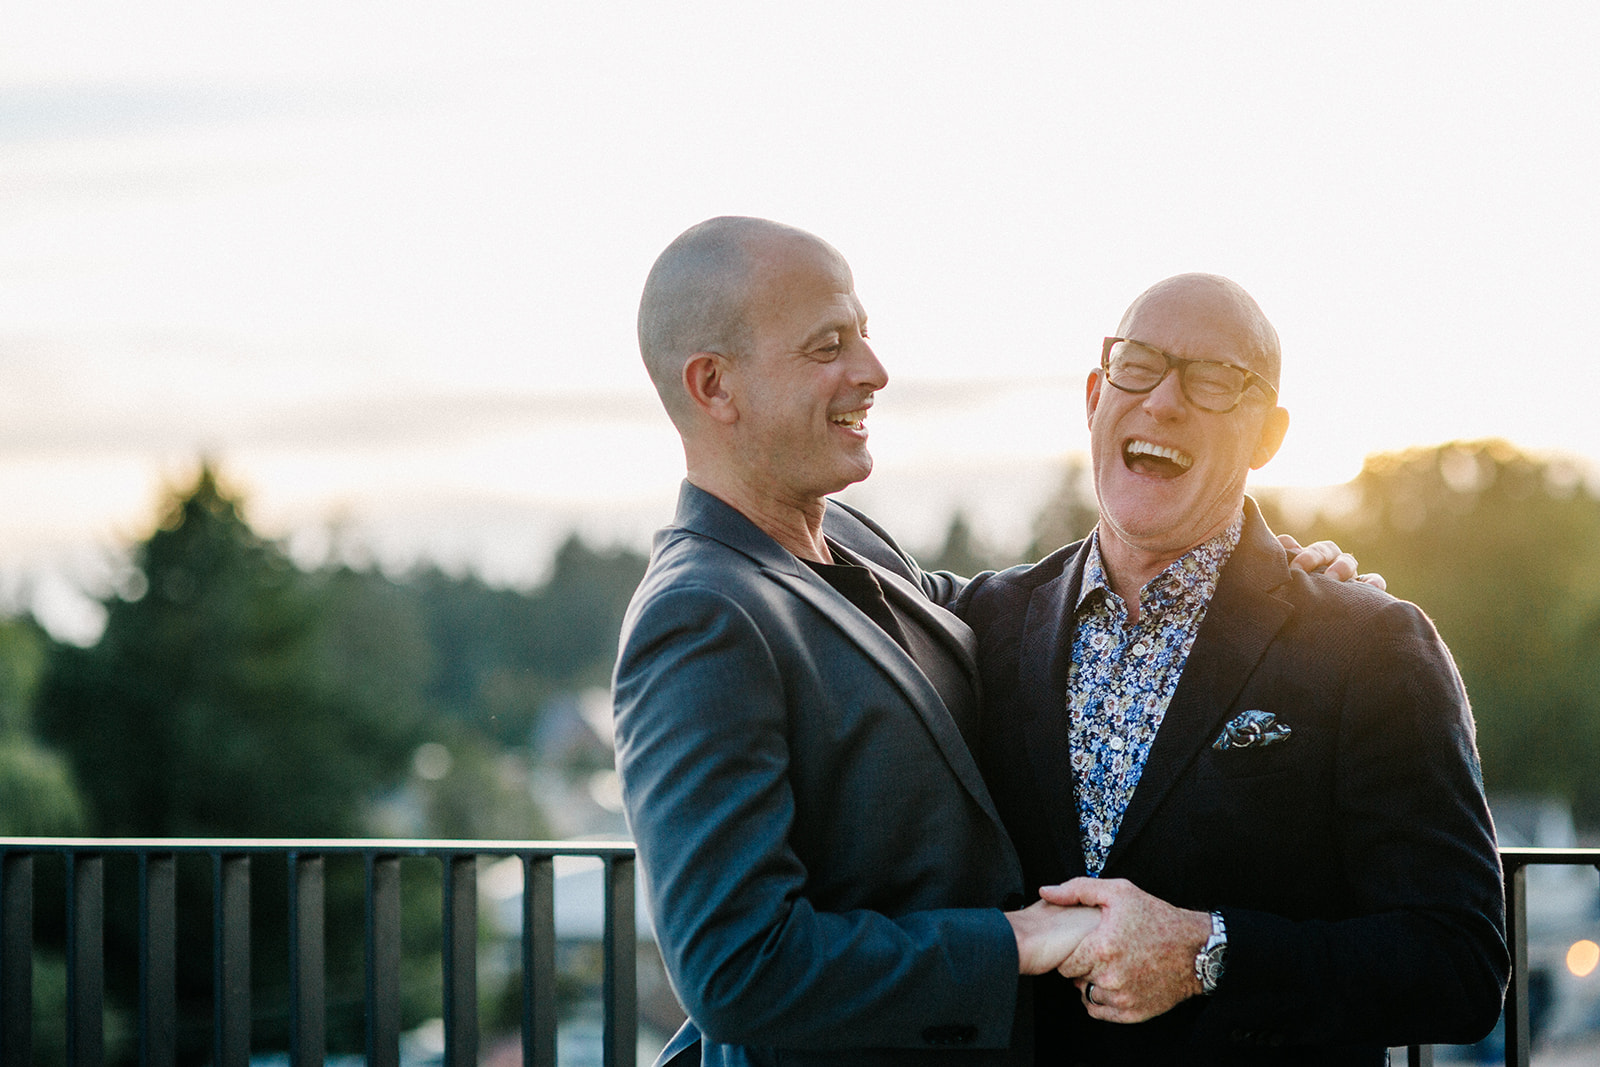 Same sex wedding, Ironlight, Lake Oswego, Oregon